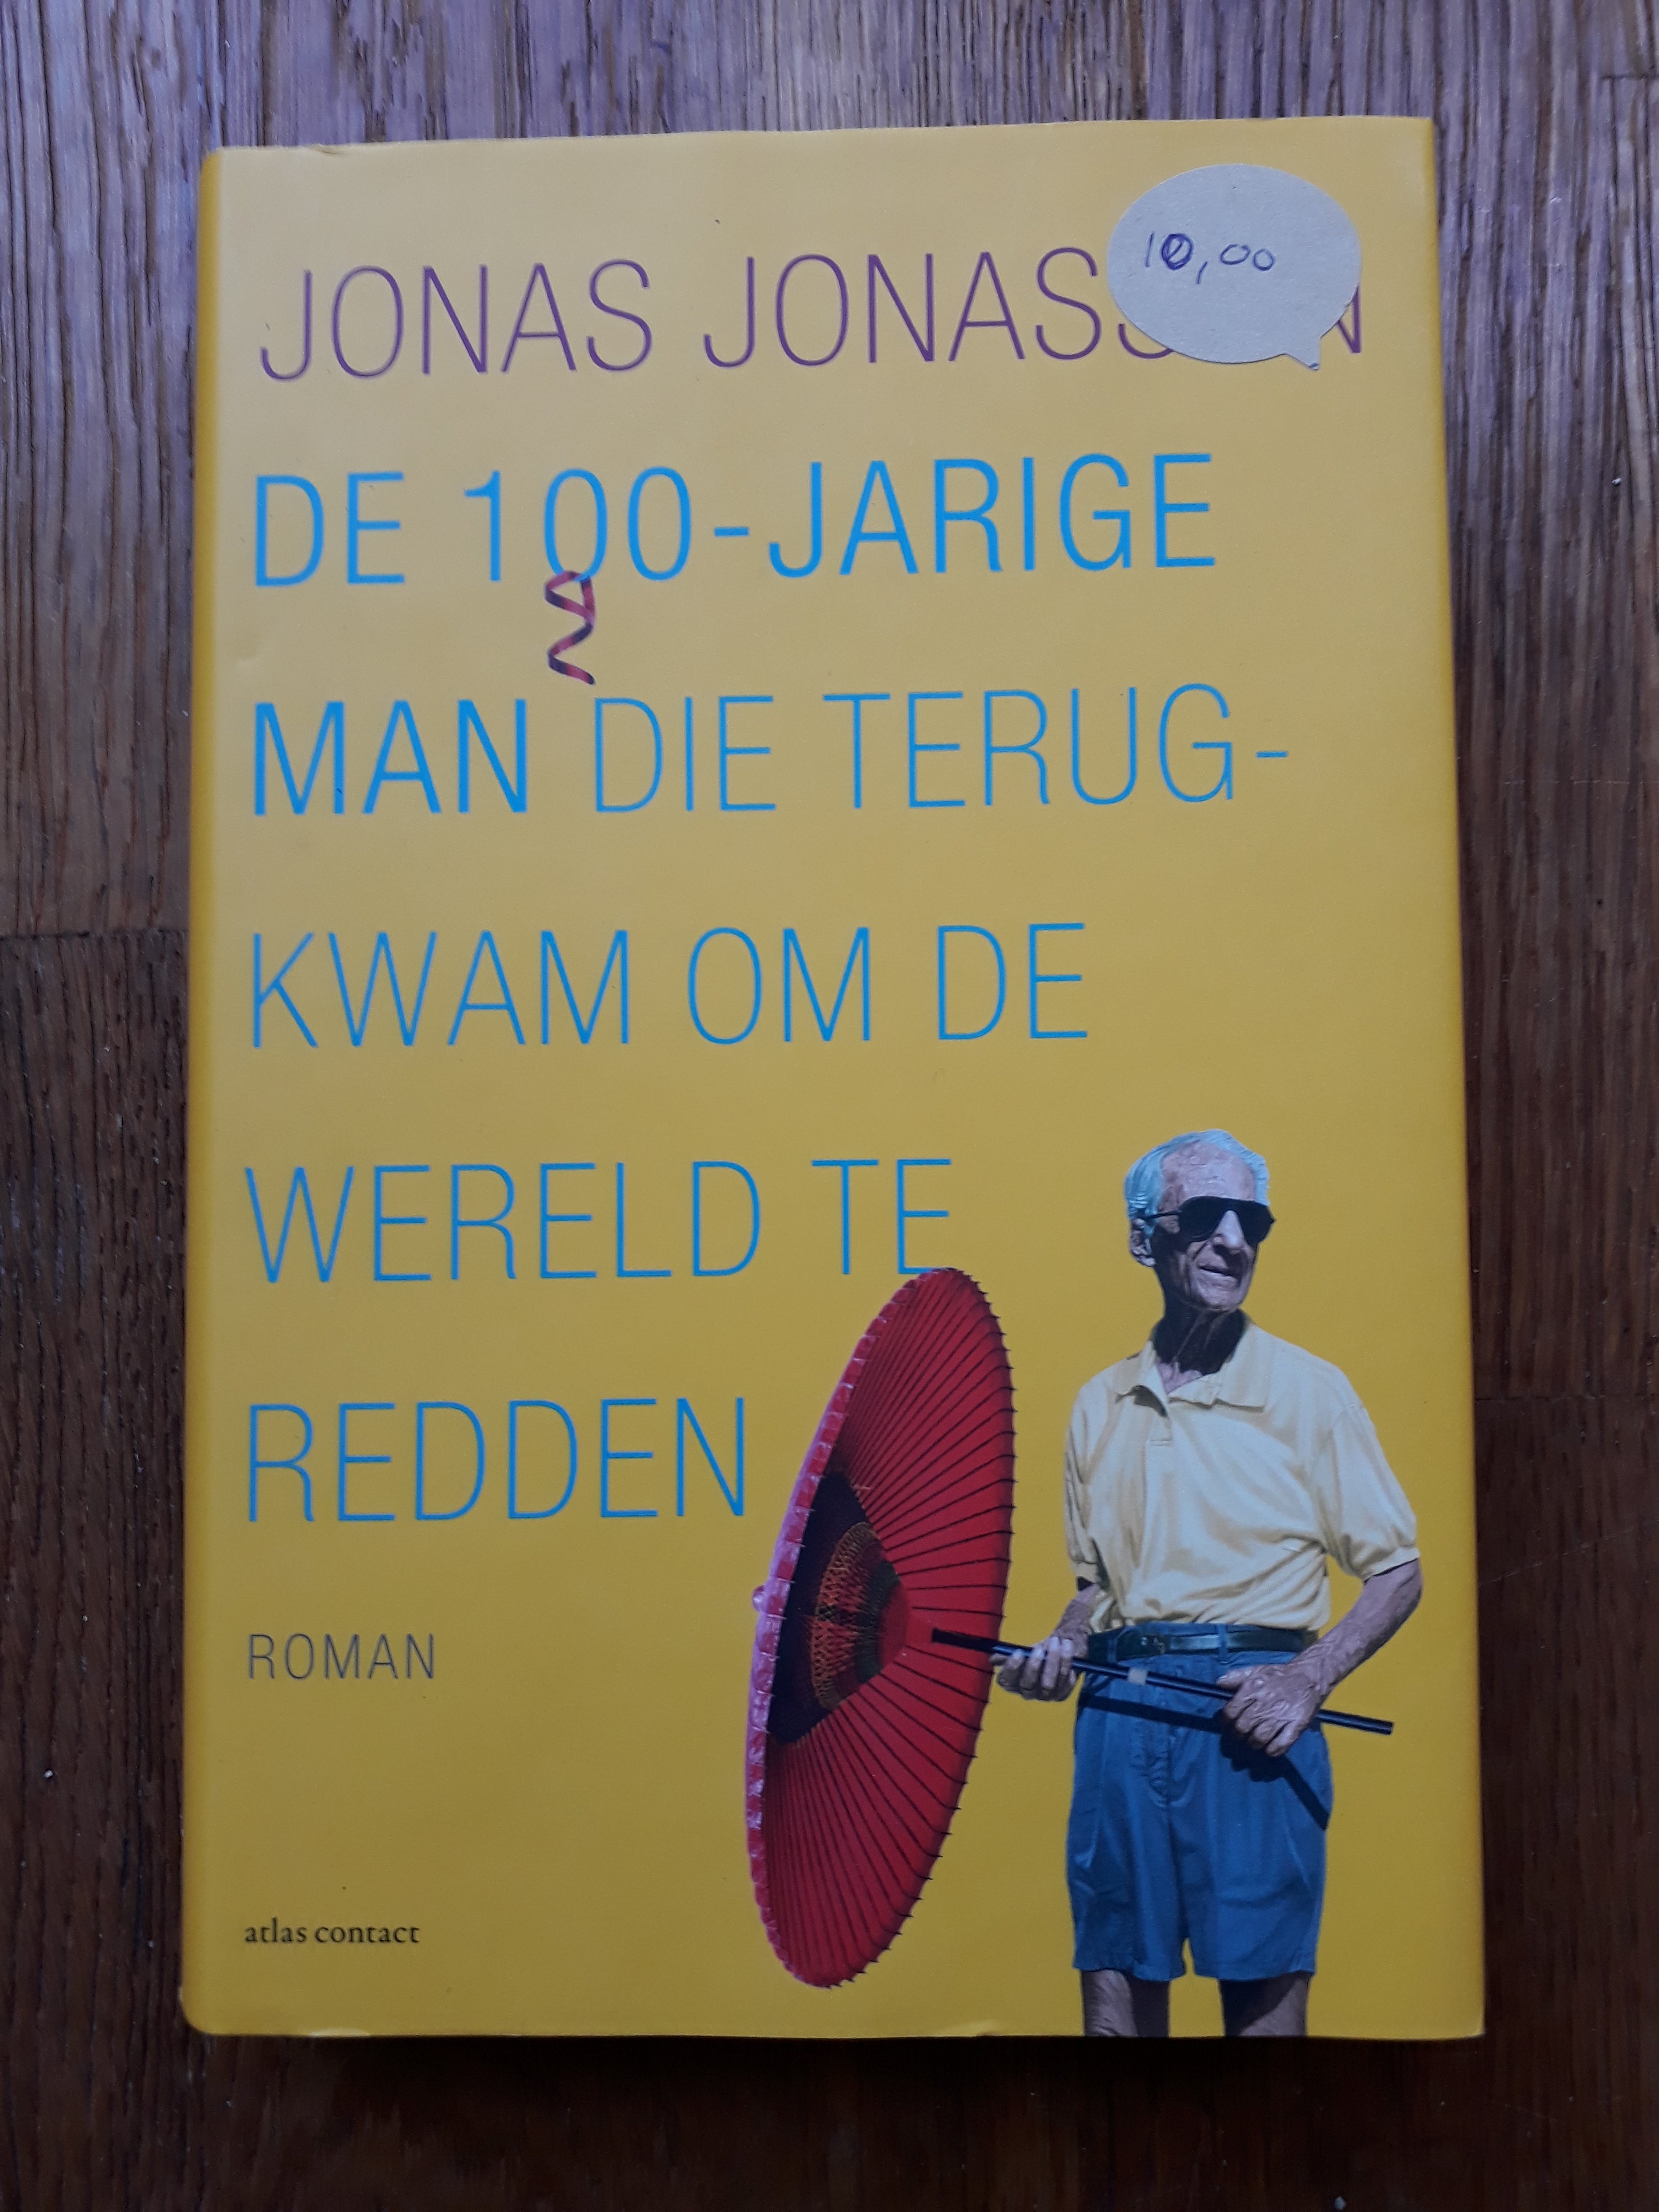 Jonas Jonasson - De 100 jarige man die terugkwam om de wereld te redden - 2dehands gebruikt